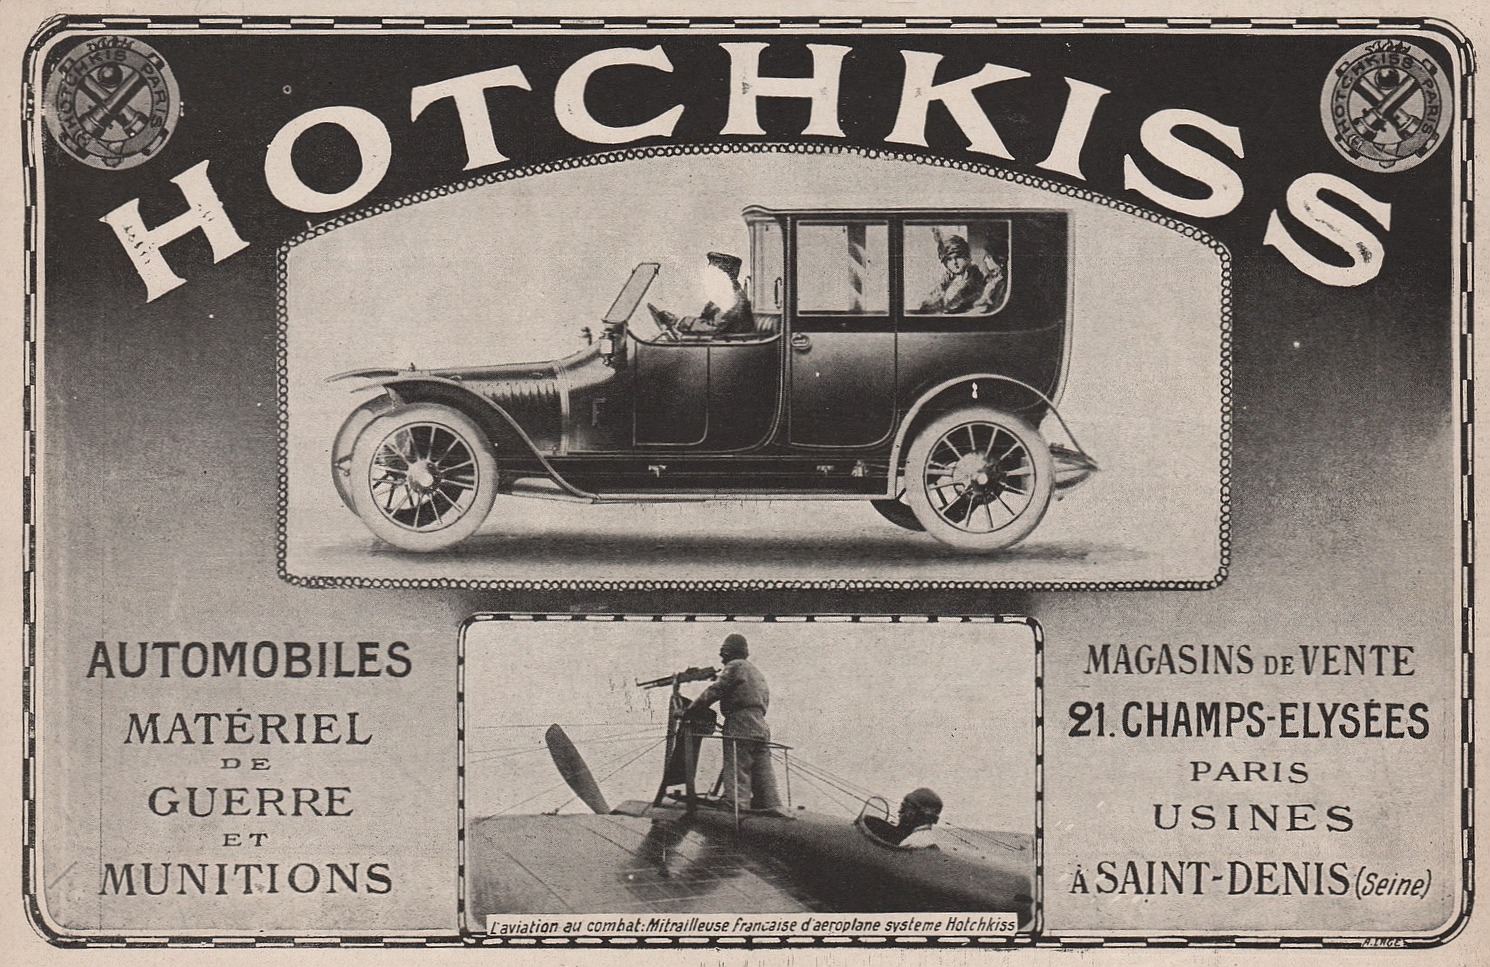 Société Hotchkiss & Cie (HOTCHKISS) 